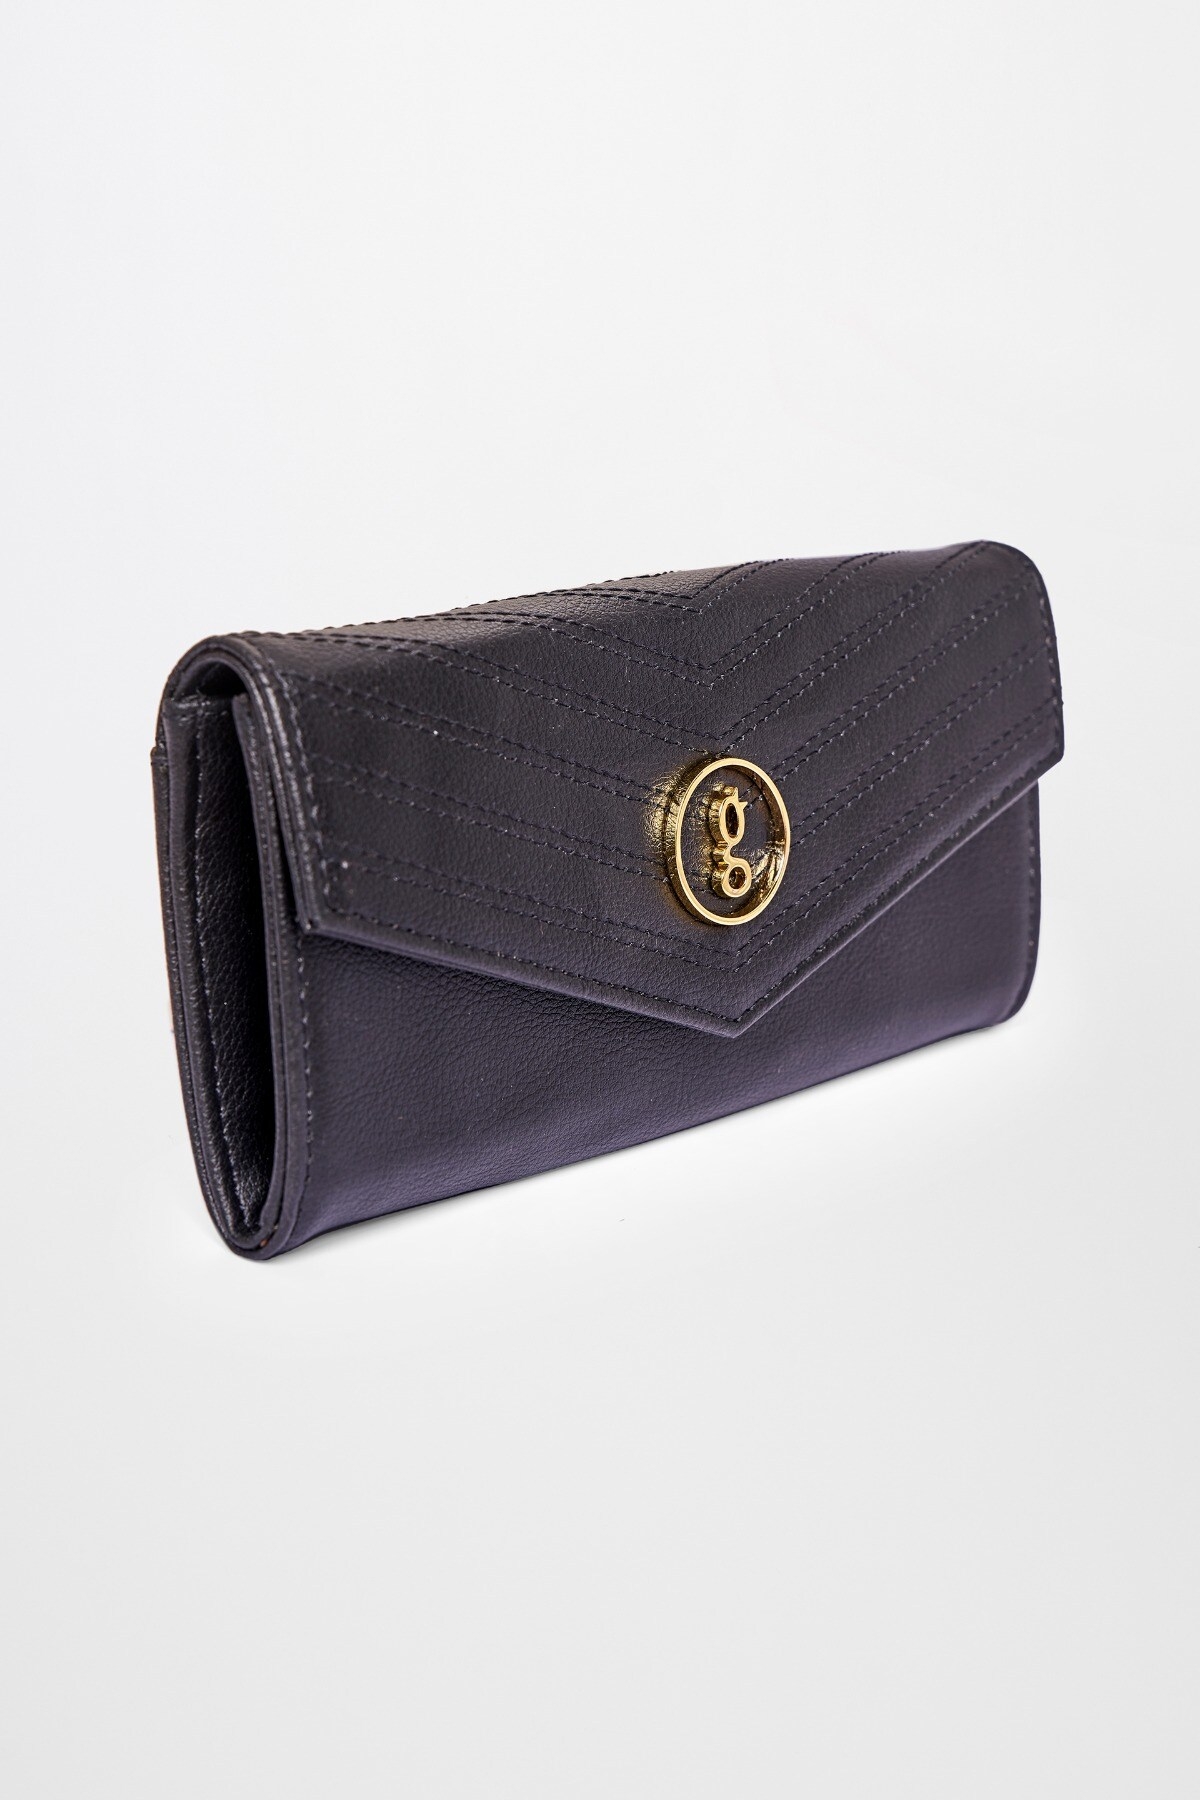 Global Desi | Black Wallet Hand Bag 0